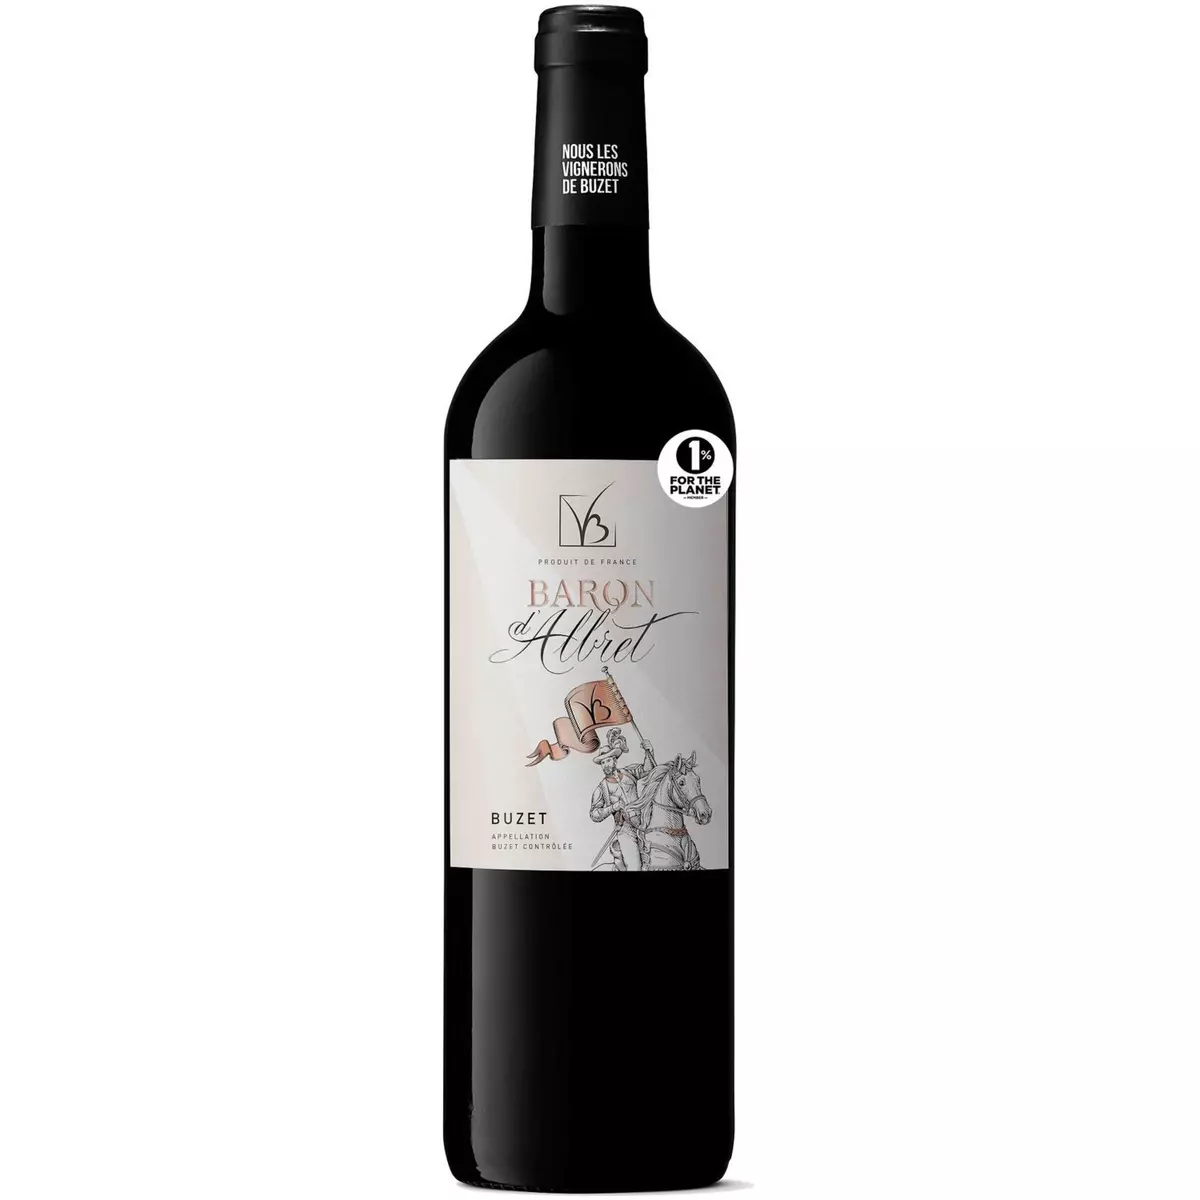 Vin rouge AOP Buzet Baron d'Albret 75cl